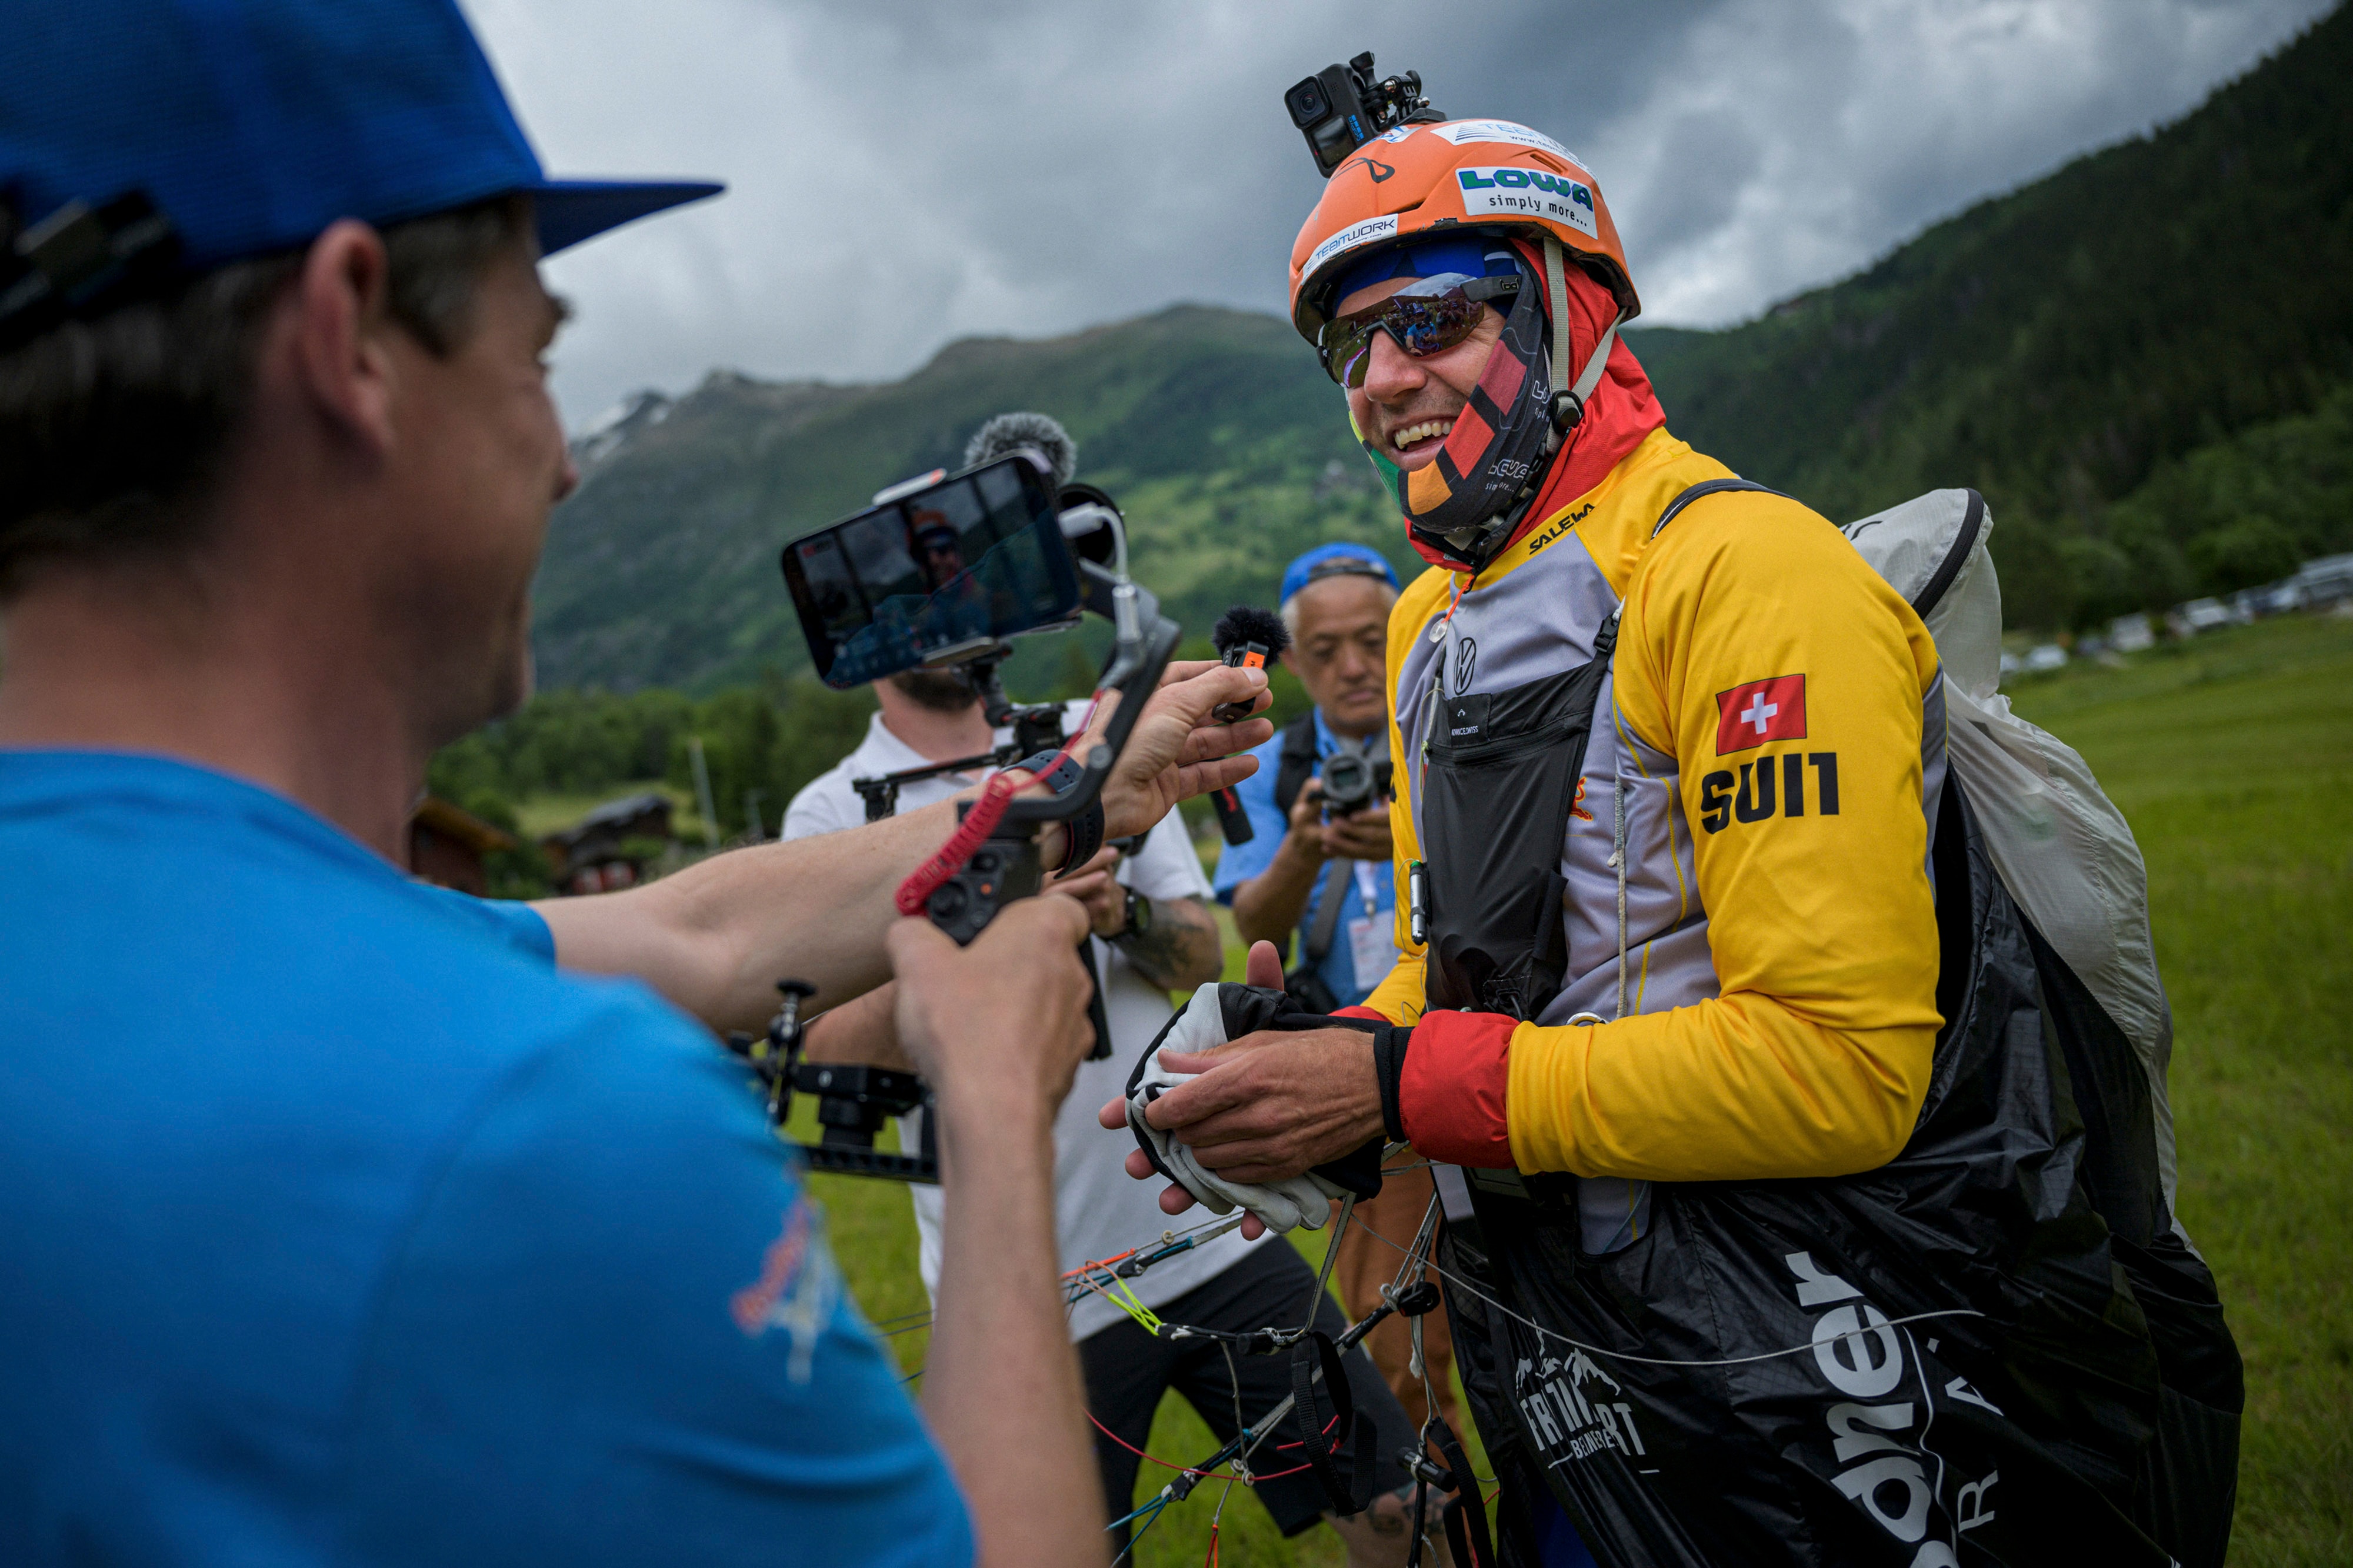 Chrigl Maurer flies during the Red Bull X-Alps in Fiesch, Switzerland on June 13, 2023.